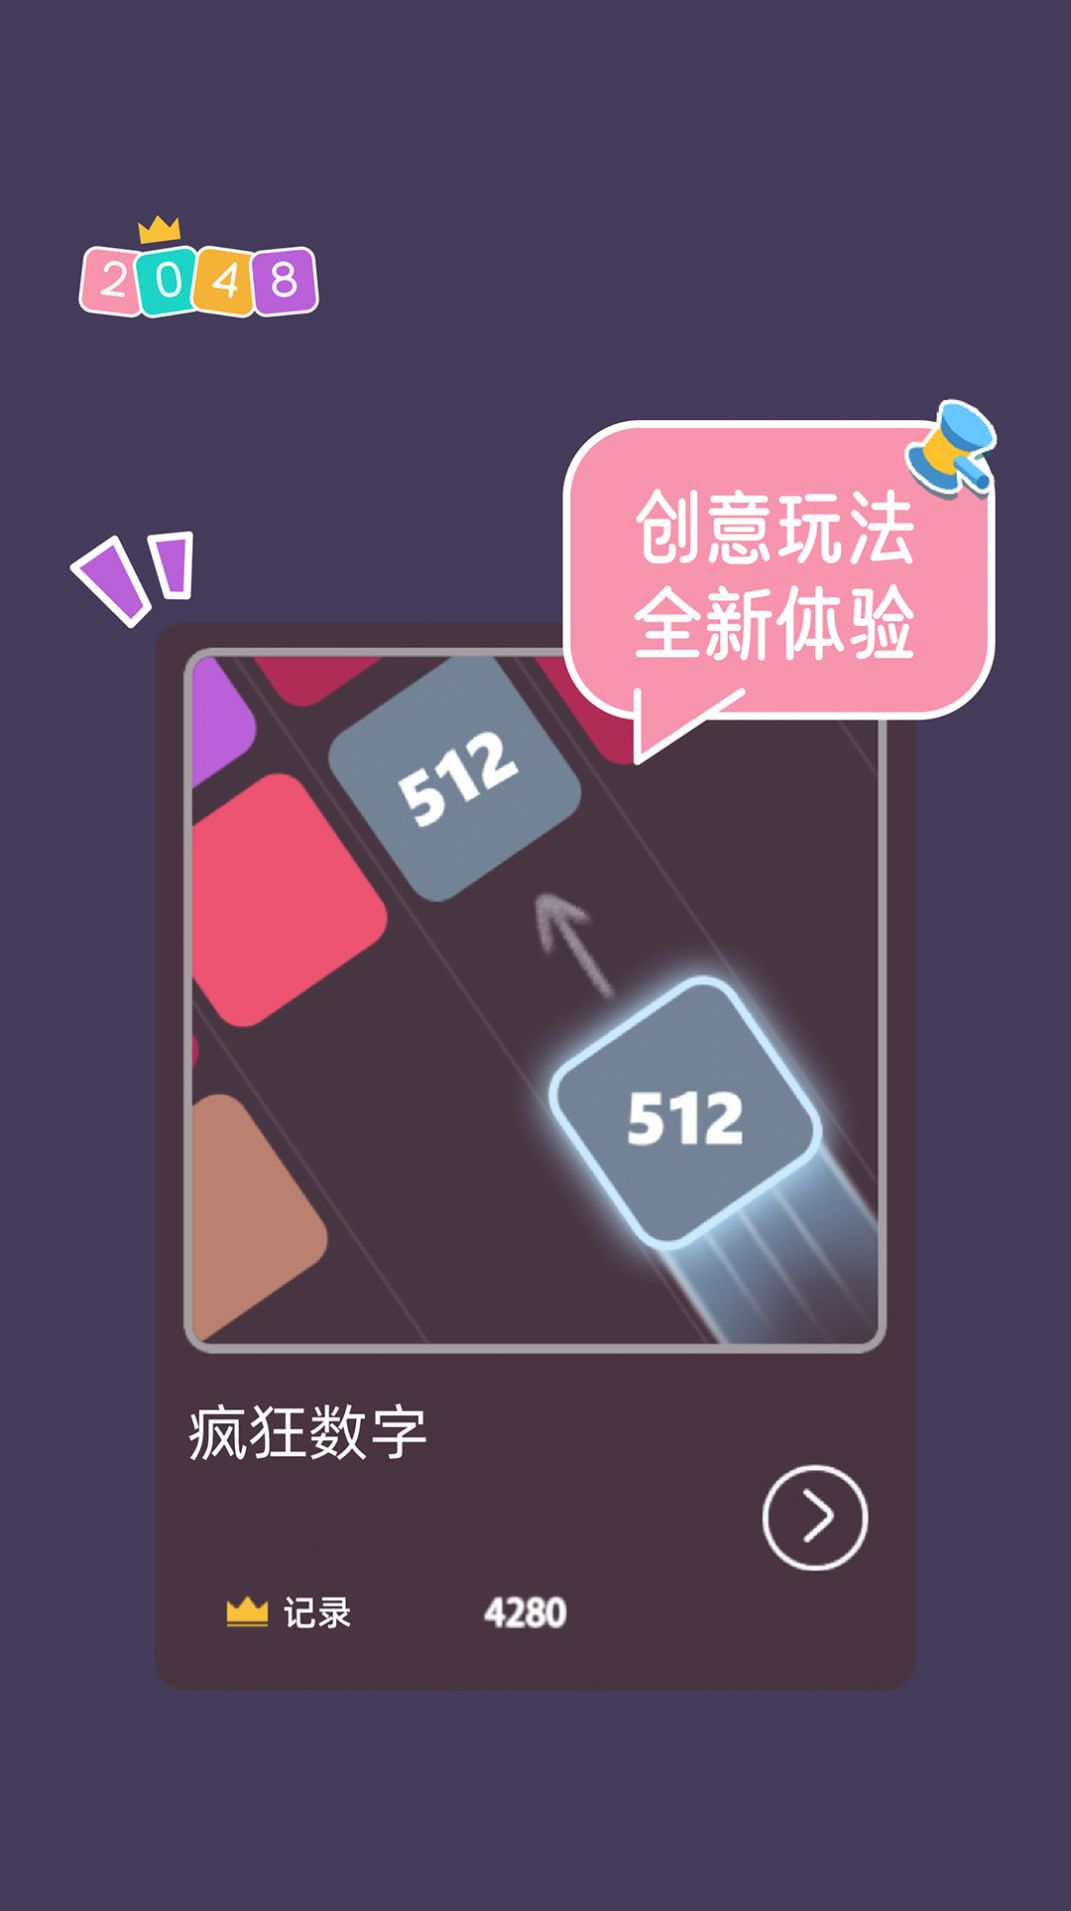 2048大合集游戏官方版图2: